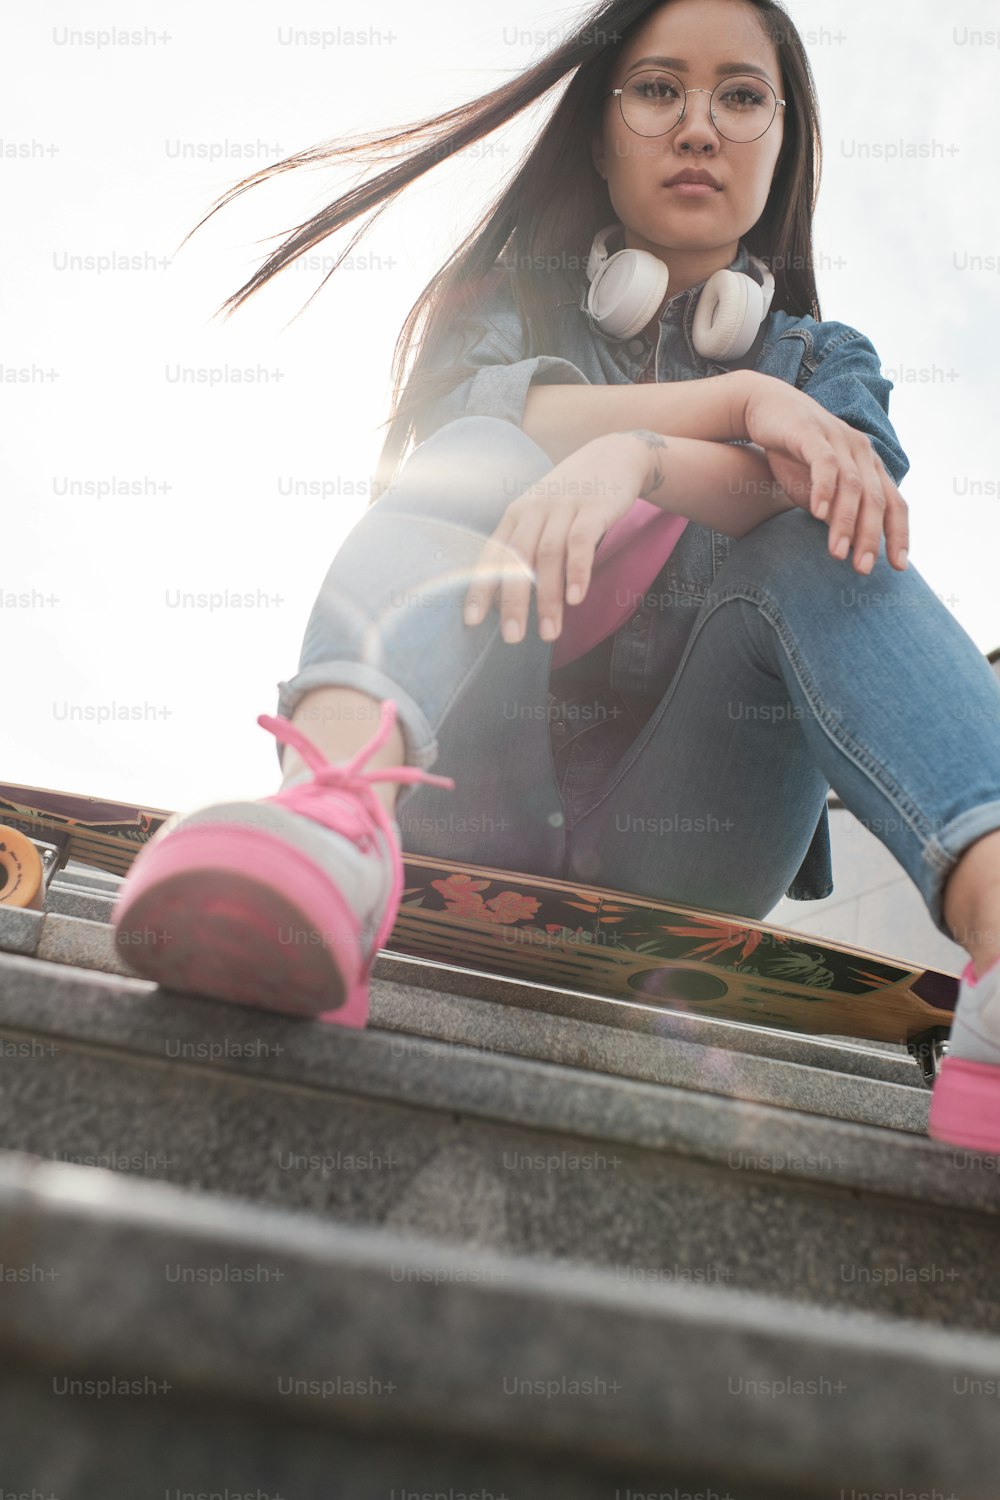 Jeune fille photographiée d’en bas de la façon dont elle est assise dans les escaliers à l’extérieur avec un longboard.